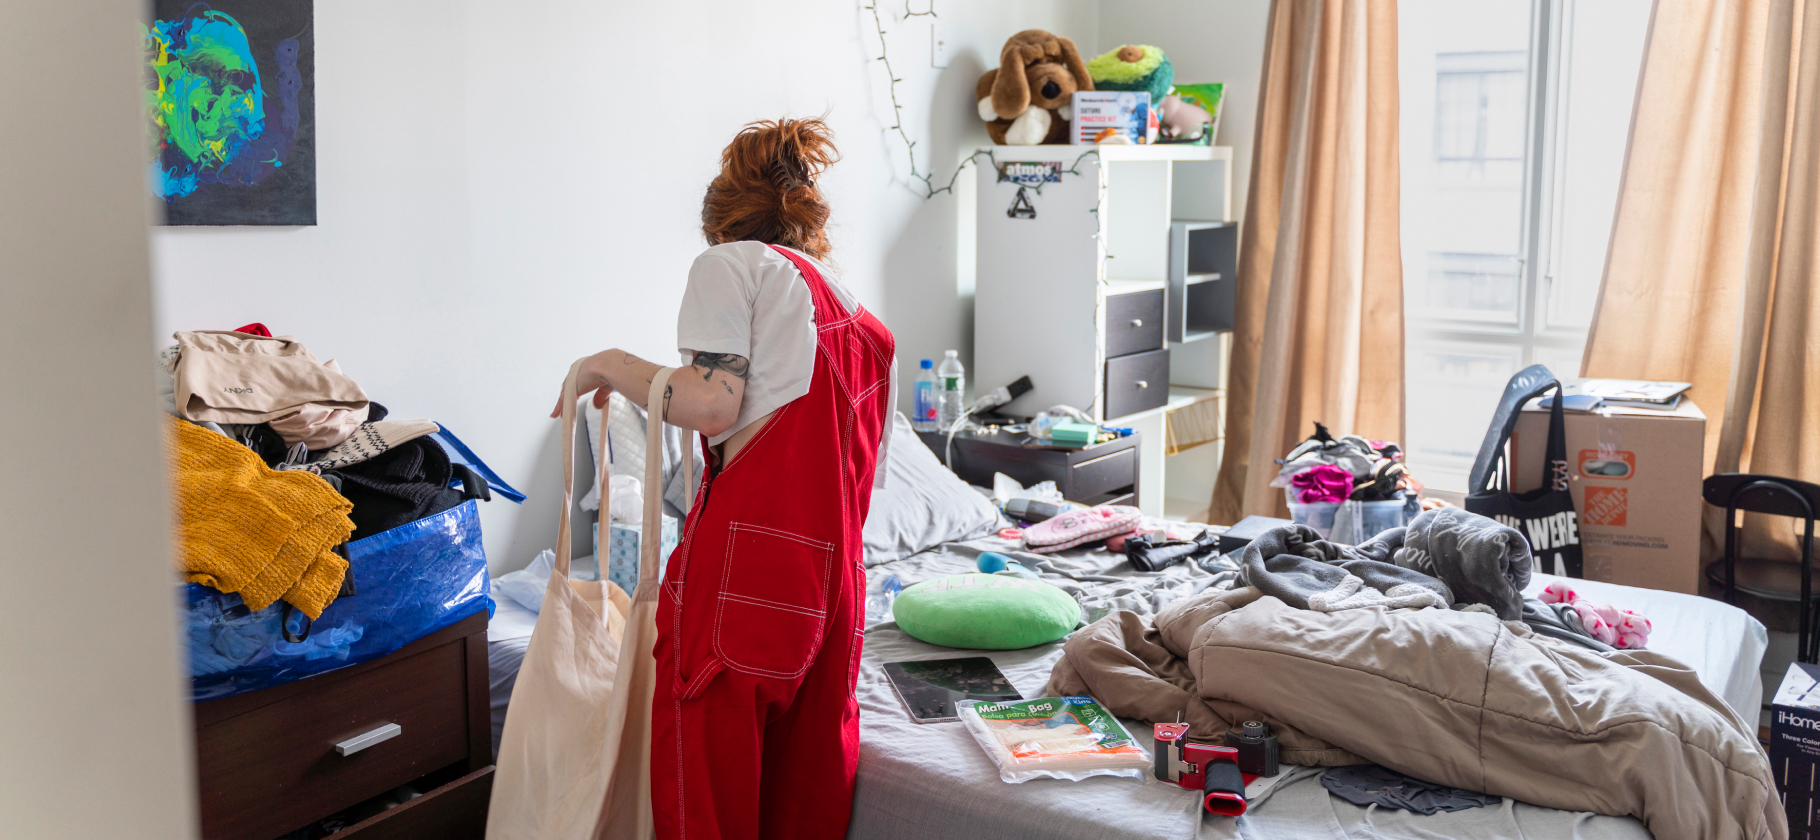 «Мой хаос всегда со мной»: 5 причин беспорядка в квартире